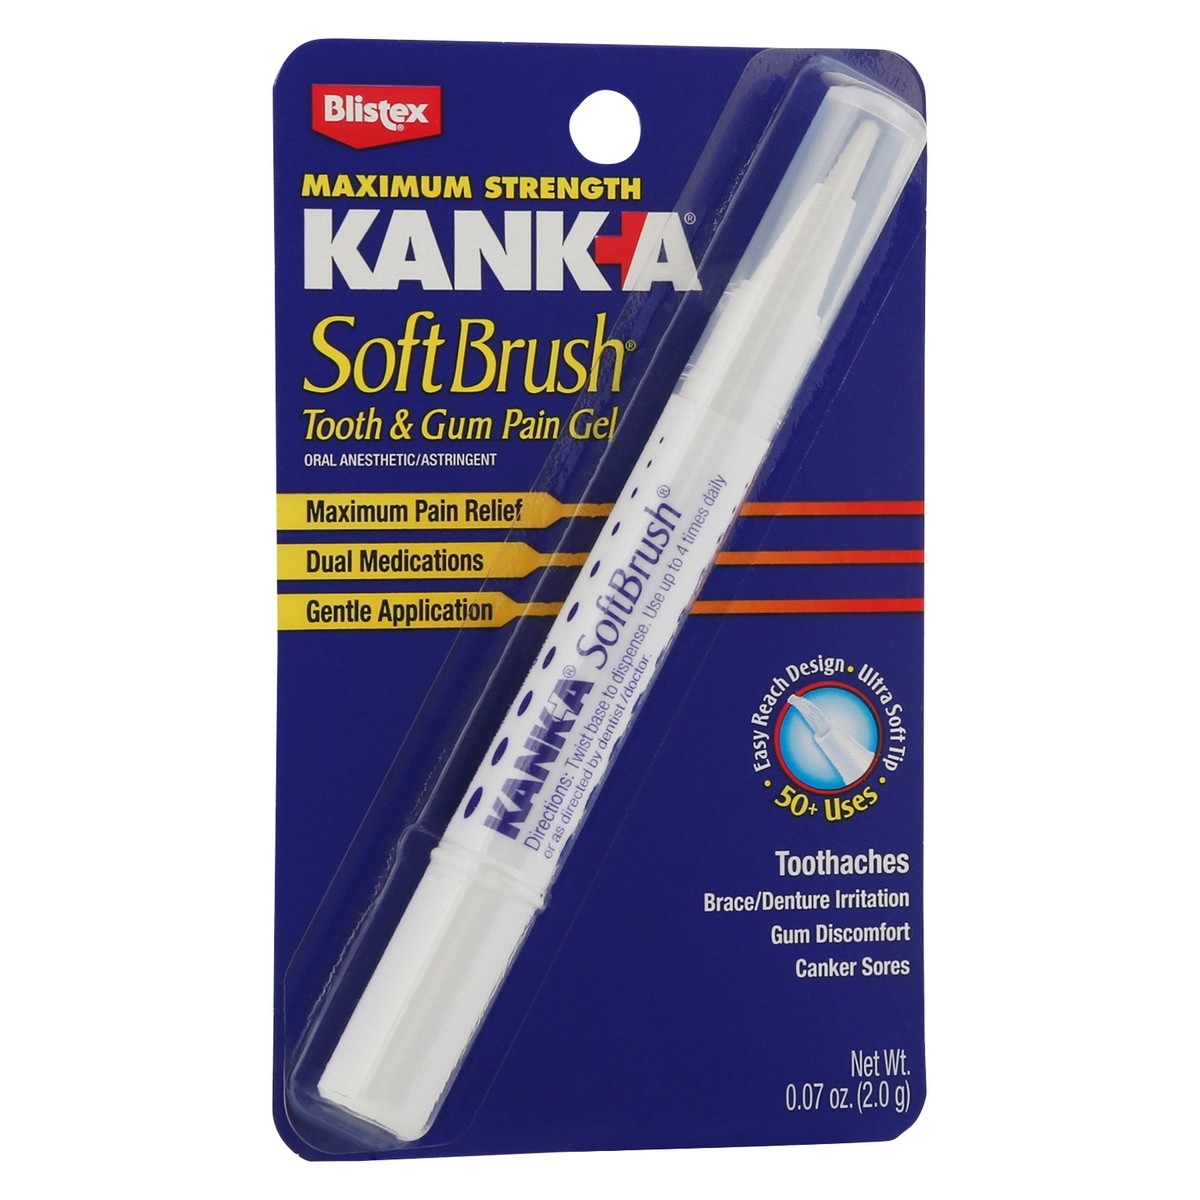 slide 2 of 9, KANK-A Kank A Softbrush Kanka Softbrush Pain Gel, 0.07 oz